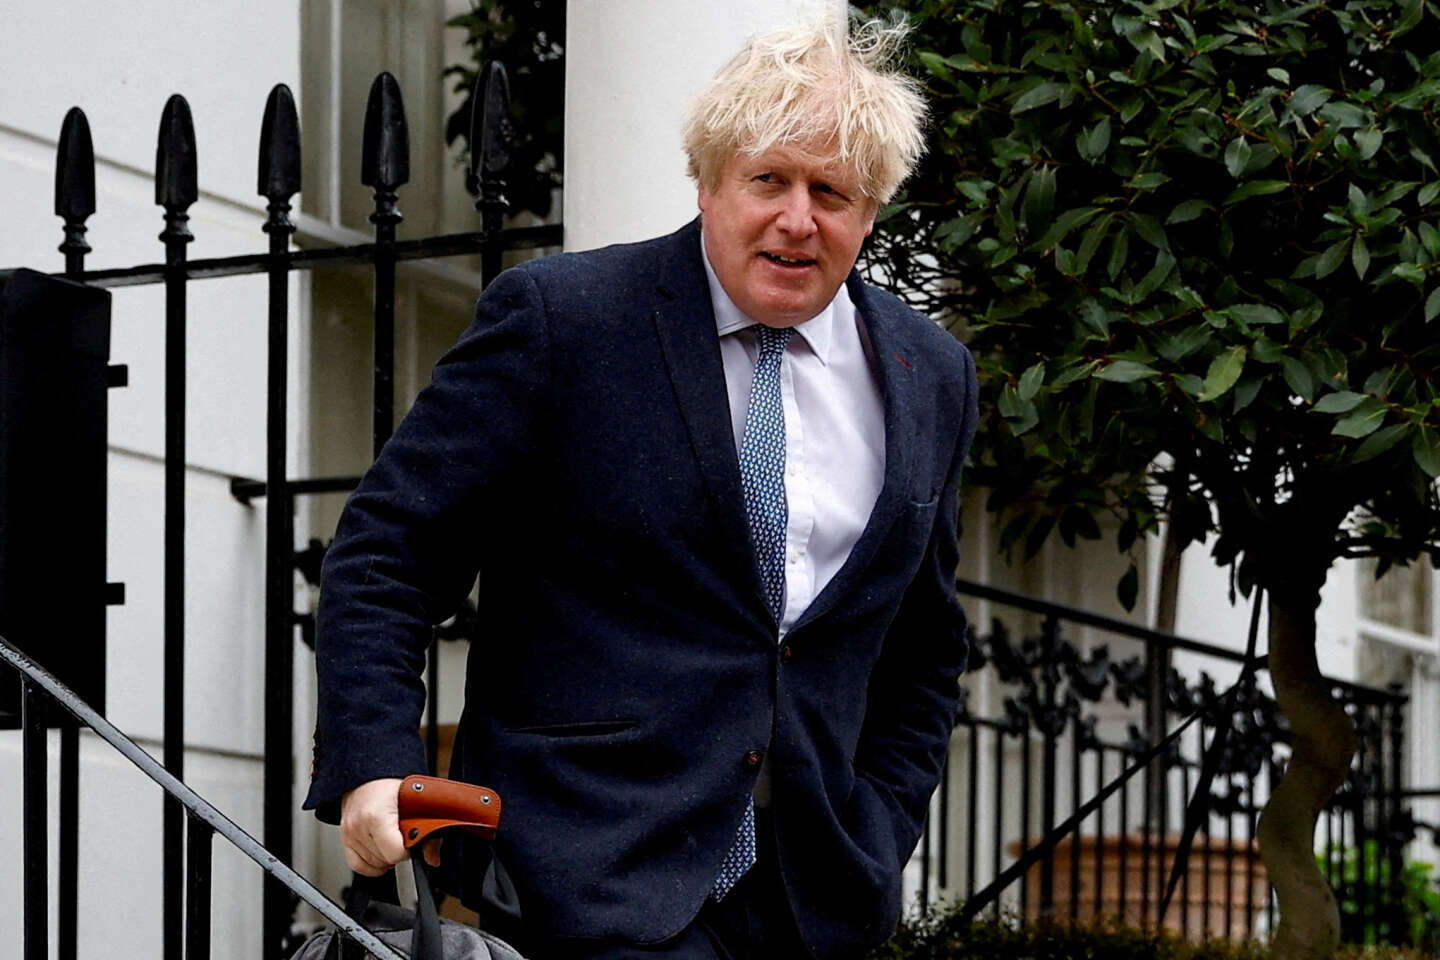 Posłowie w dużej mierze zaakceptowali obciążający raport przeciwko Borisowi Johnsonowi